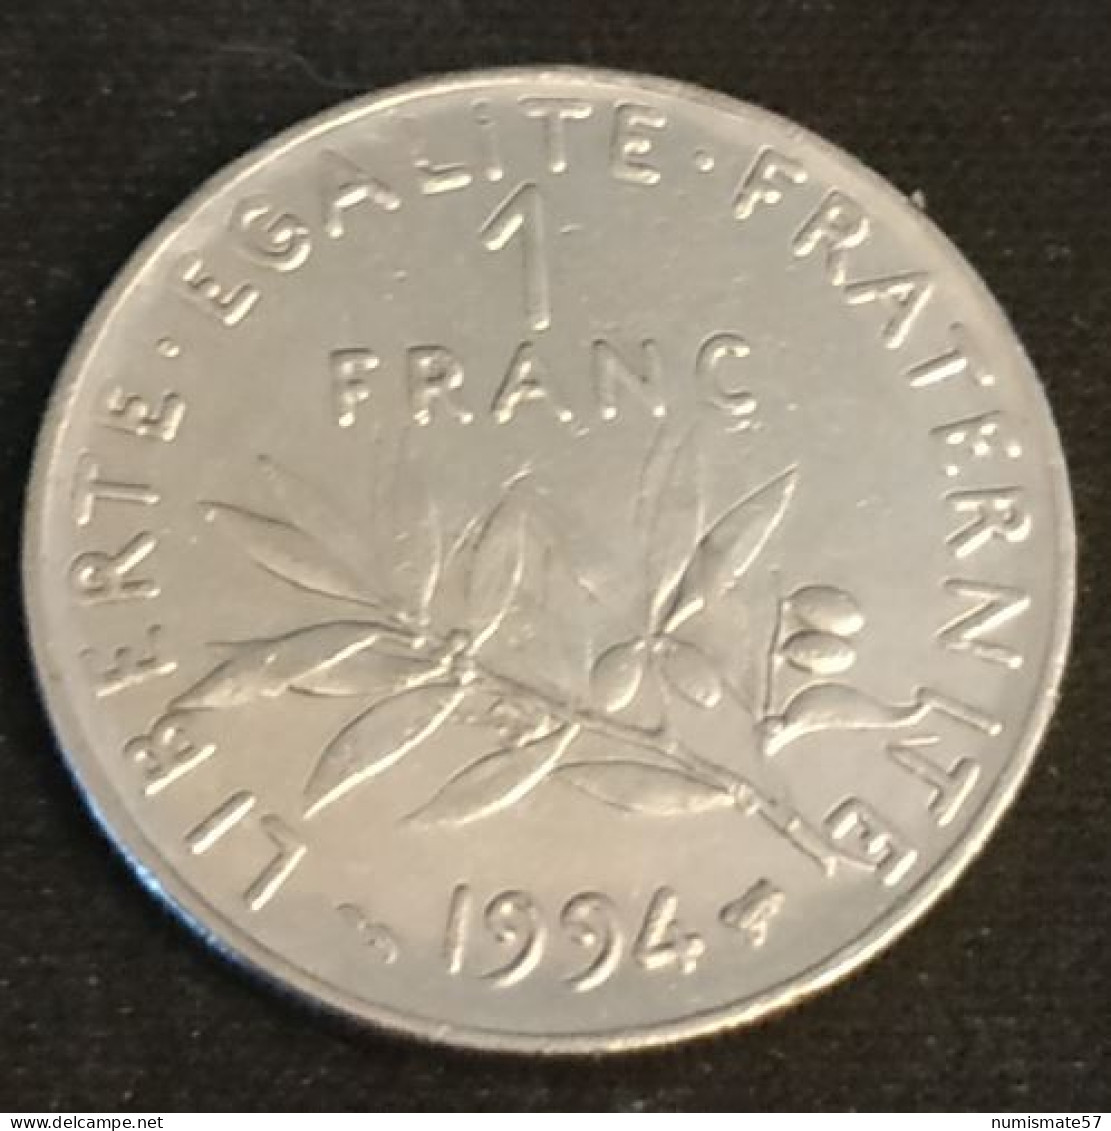 FRANCE - 1 FRANC 1994 Abeille - Semeuse - O.Roty - Tranche Striée - Nickel - Gad 474 - KM 925.1 - 1 Franc